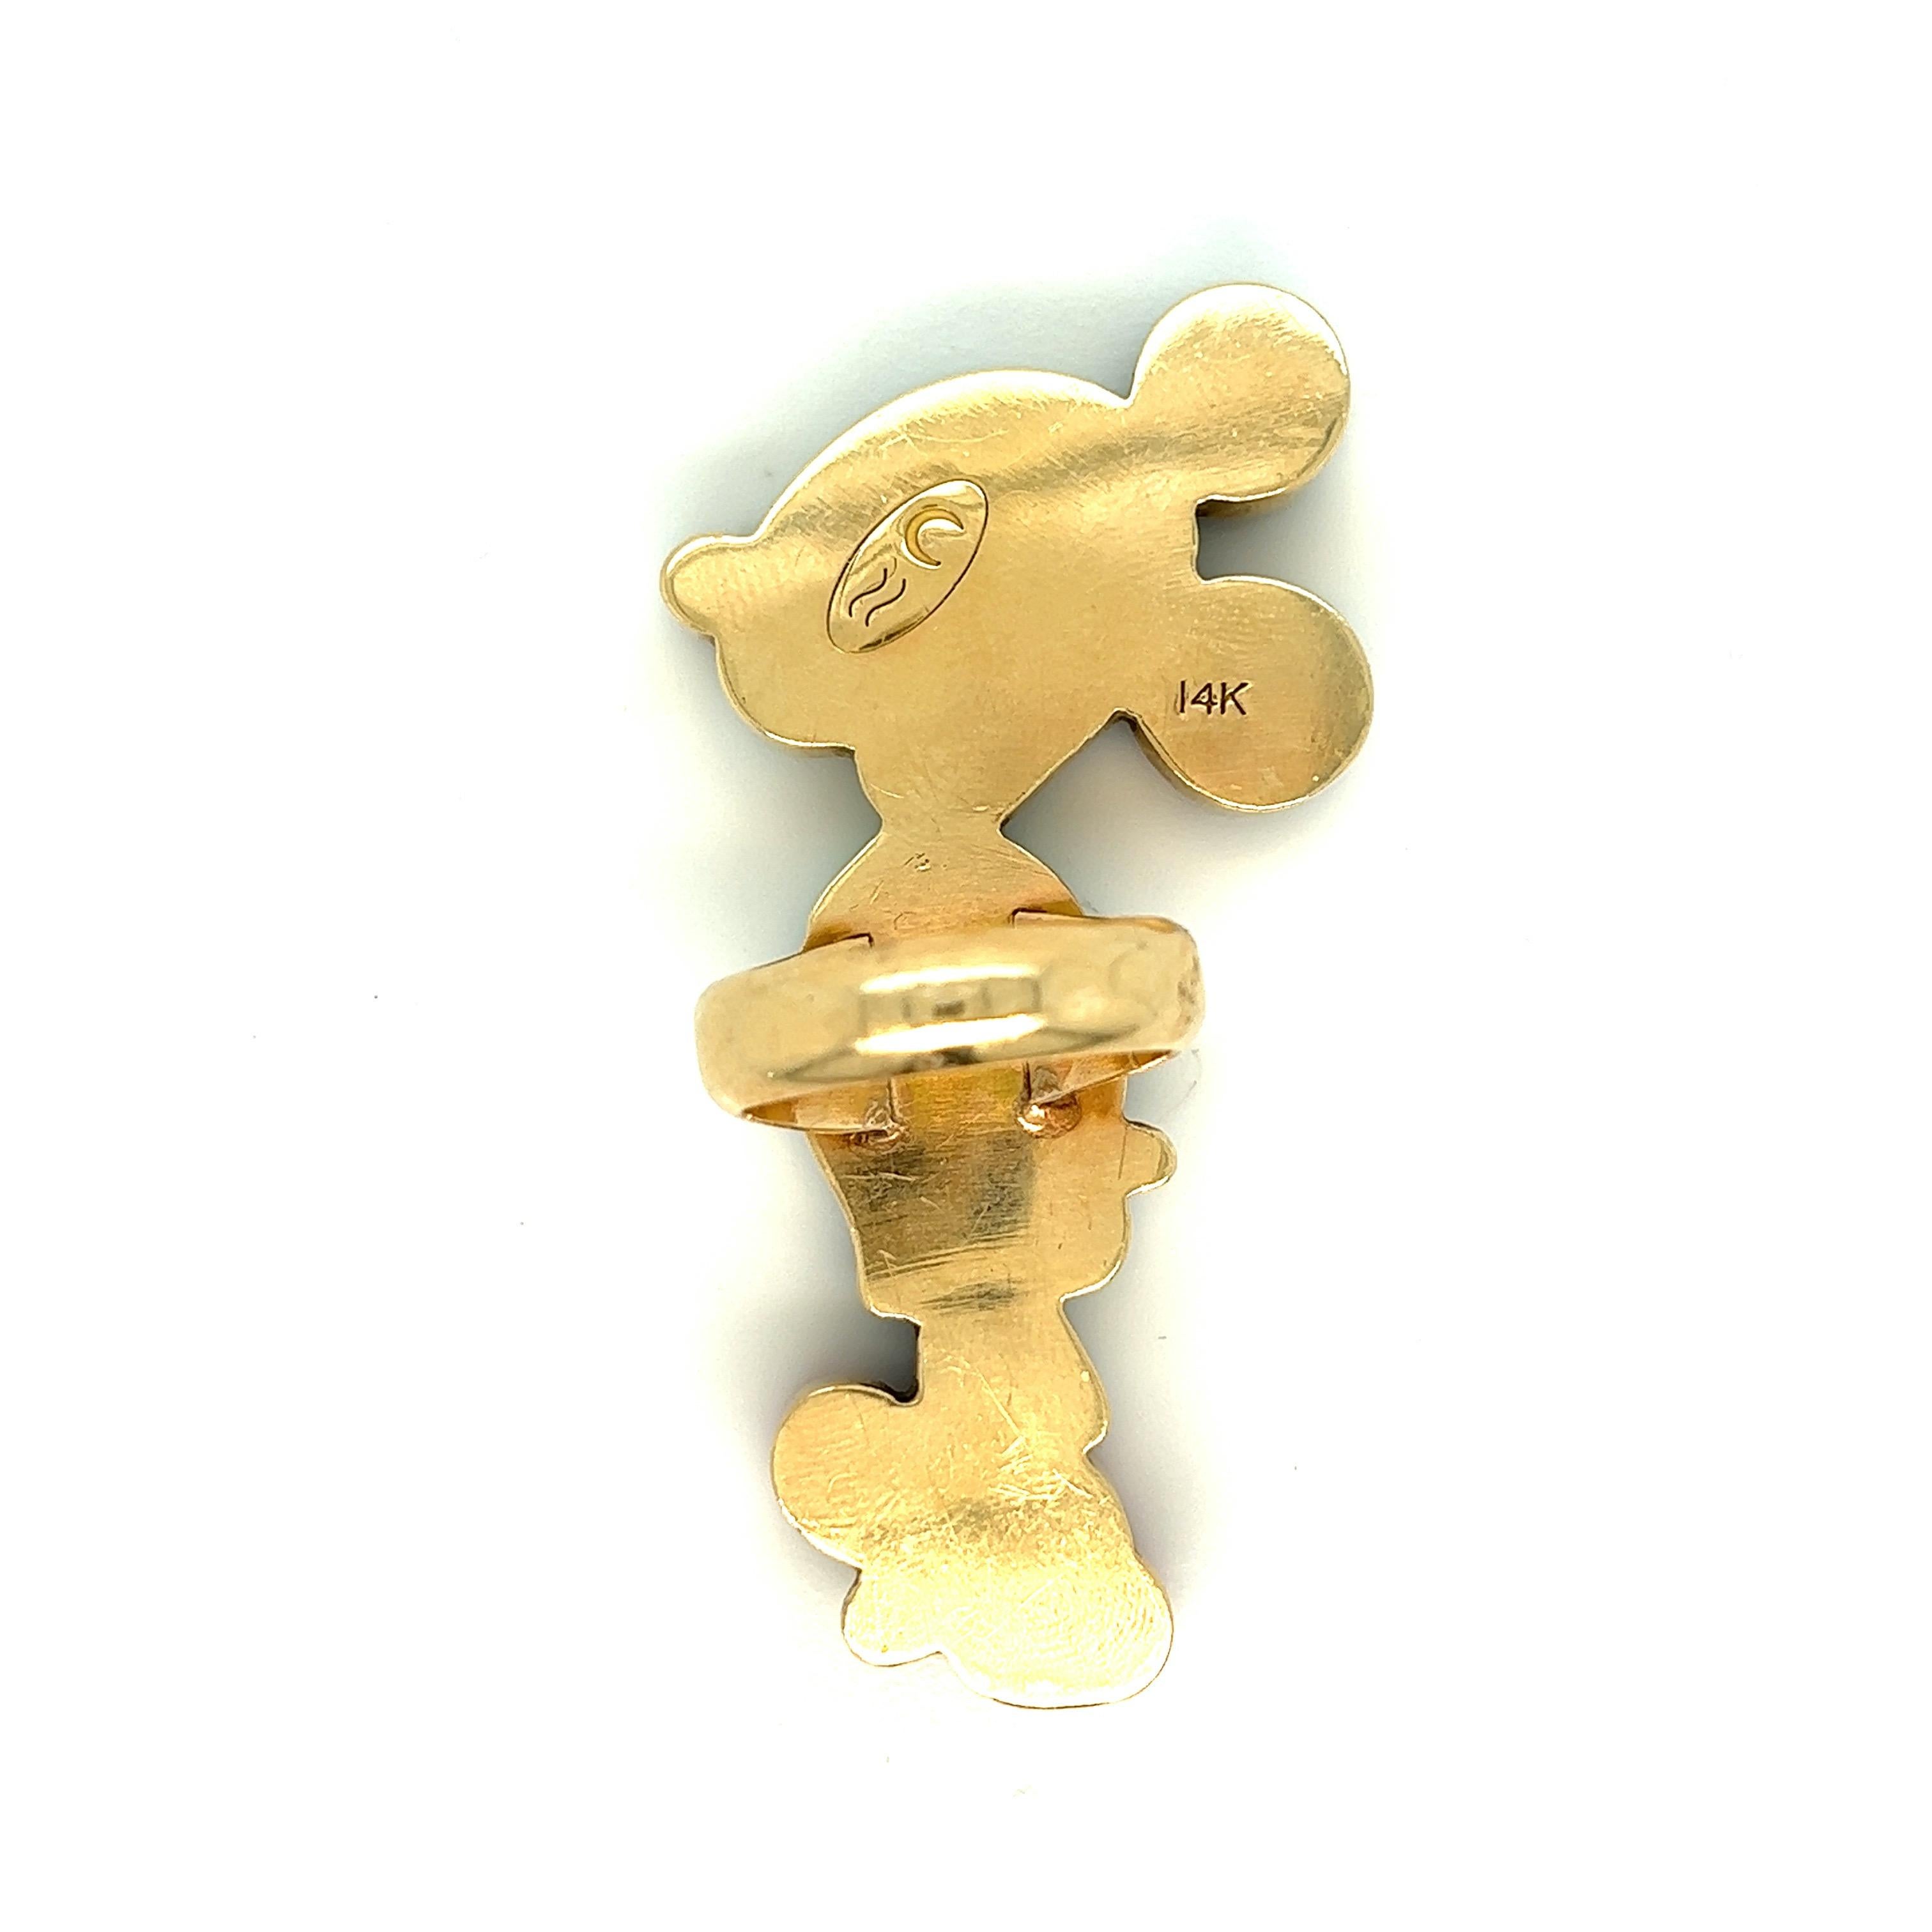 Veronica Poblano Mickey Mouse Ring aus Gold mit mehreren Edelsteinen, um 1970

Schwarzer Onyx, Perlmutt, Türkis, Abalone-Muschel und Koralle, 14 Karat Gelbgold; markiert 14kt, mit Herstellermarke 

Größe: Breite 1,19 Zoll, Länge 2,31